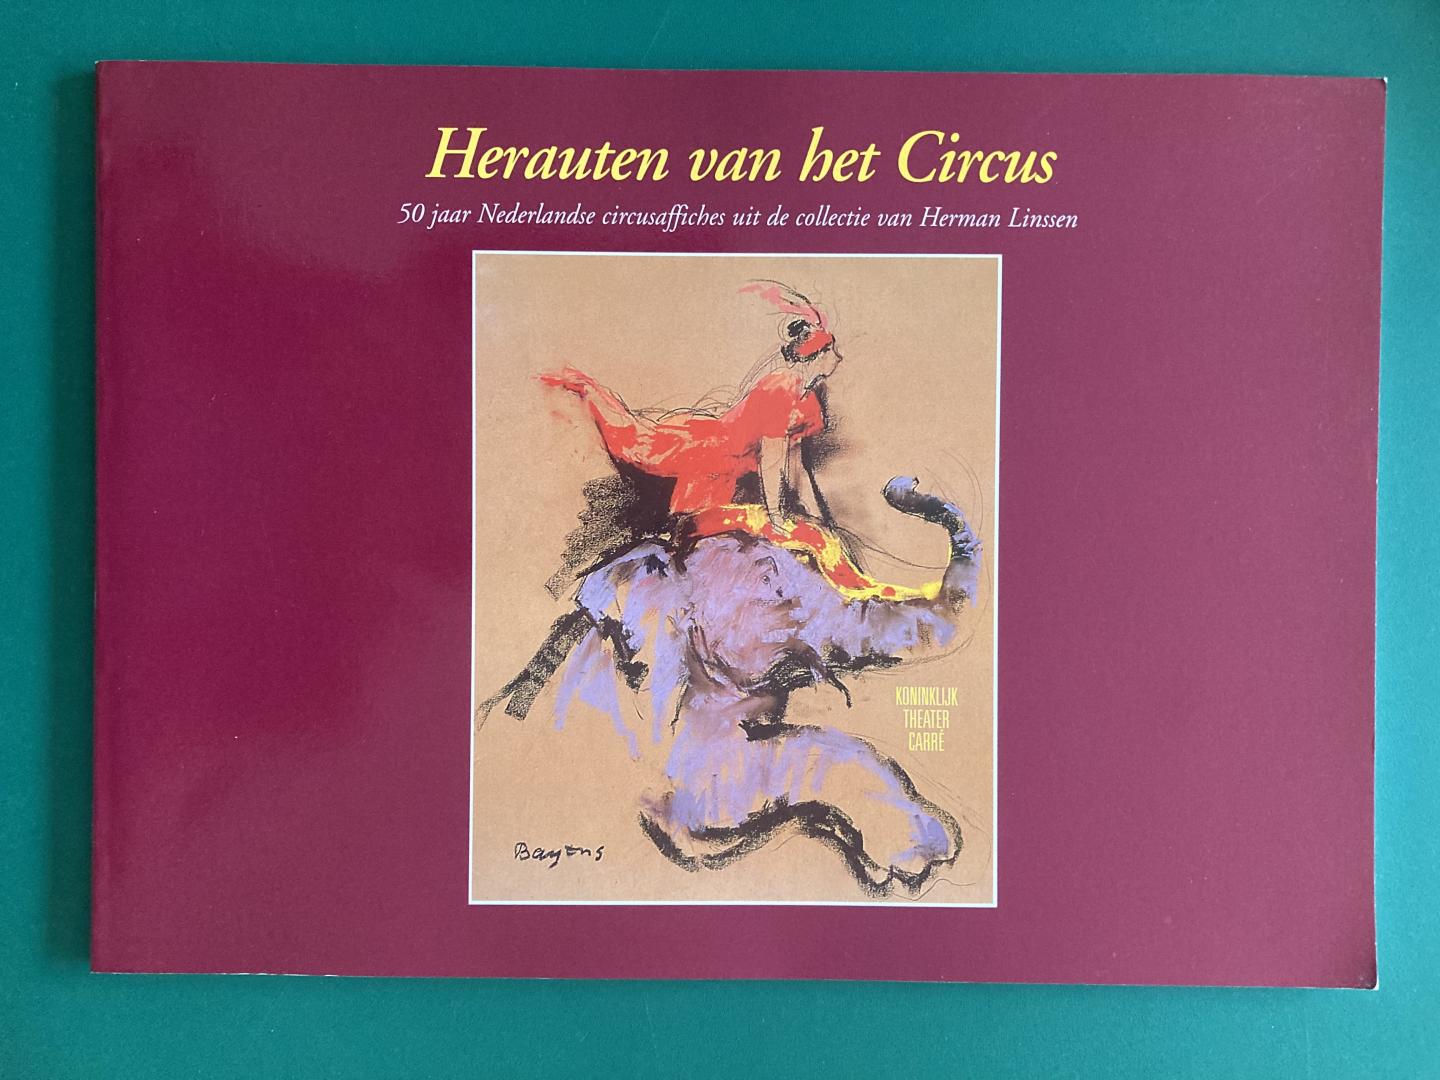 Vrieling, Dick H. - Herauten van het Circus. 50 jaar Nederlandse circusaffiches uit de collectie van Herman Linssen